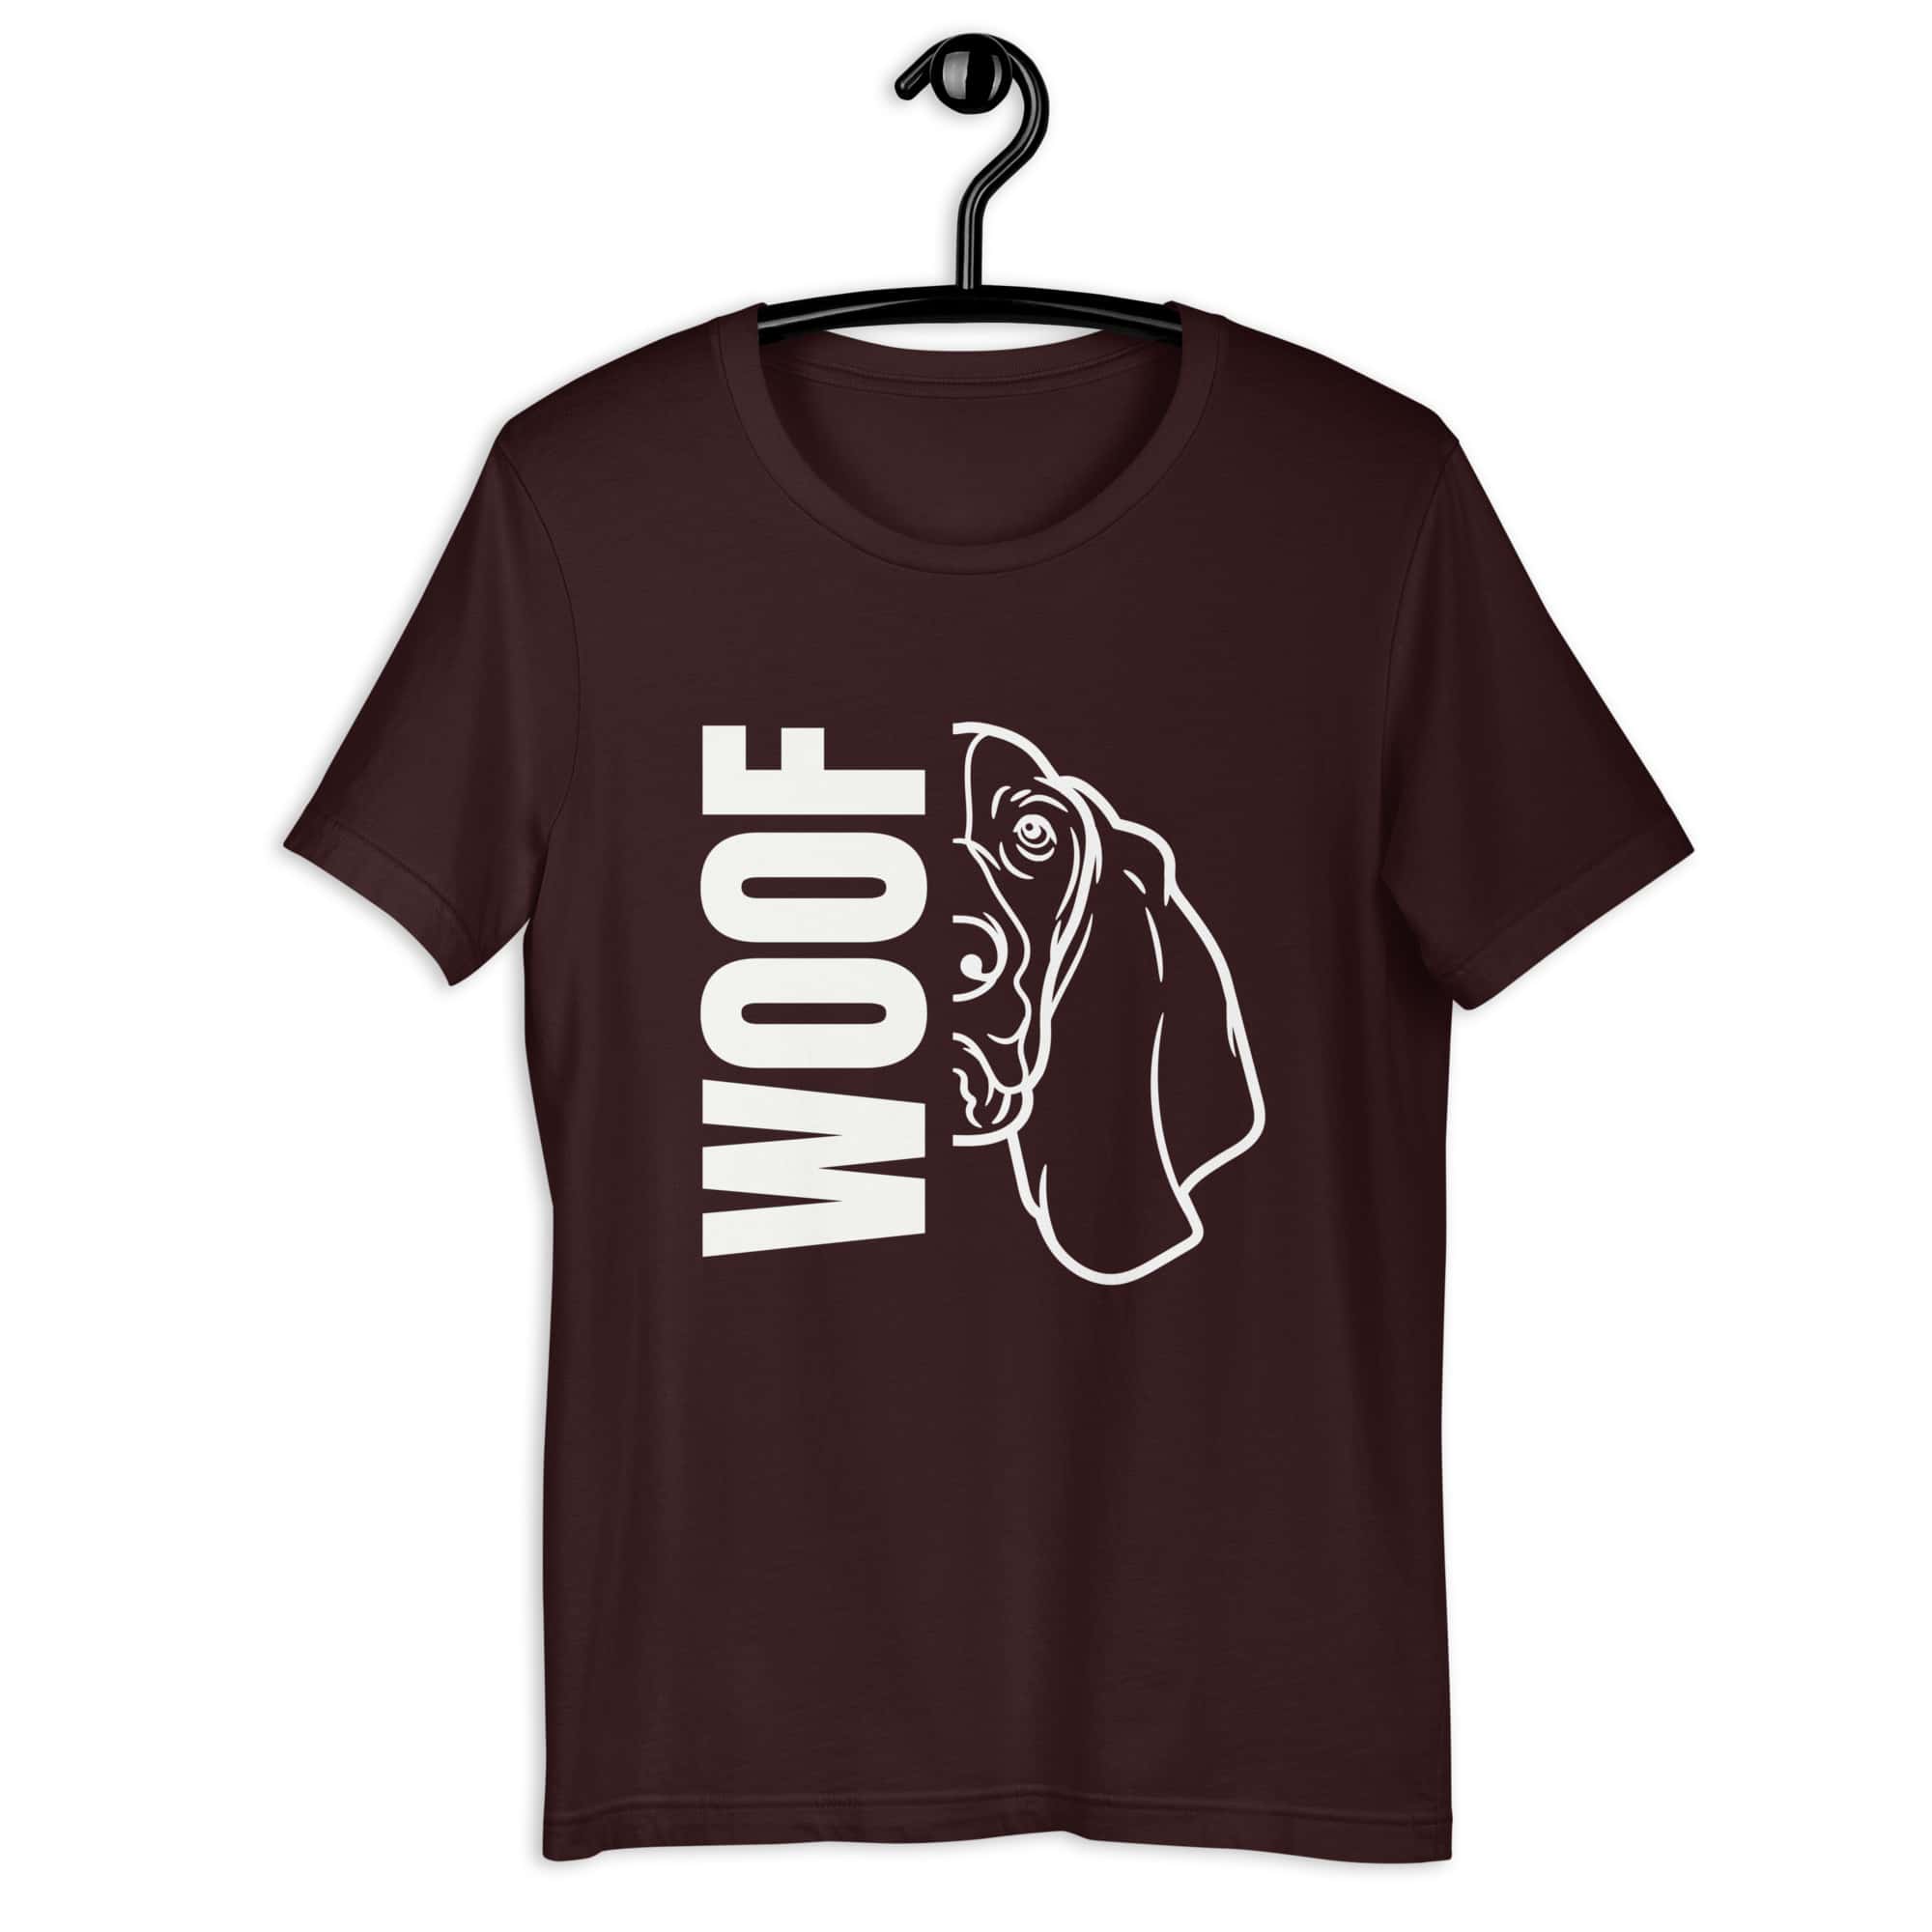 Woof Basset Hound Unisex T-Shirt brown